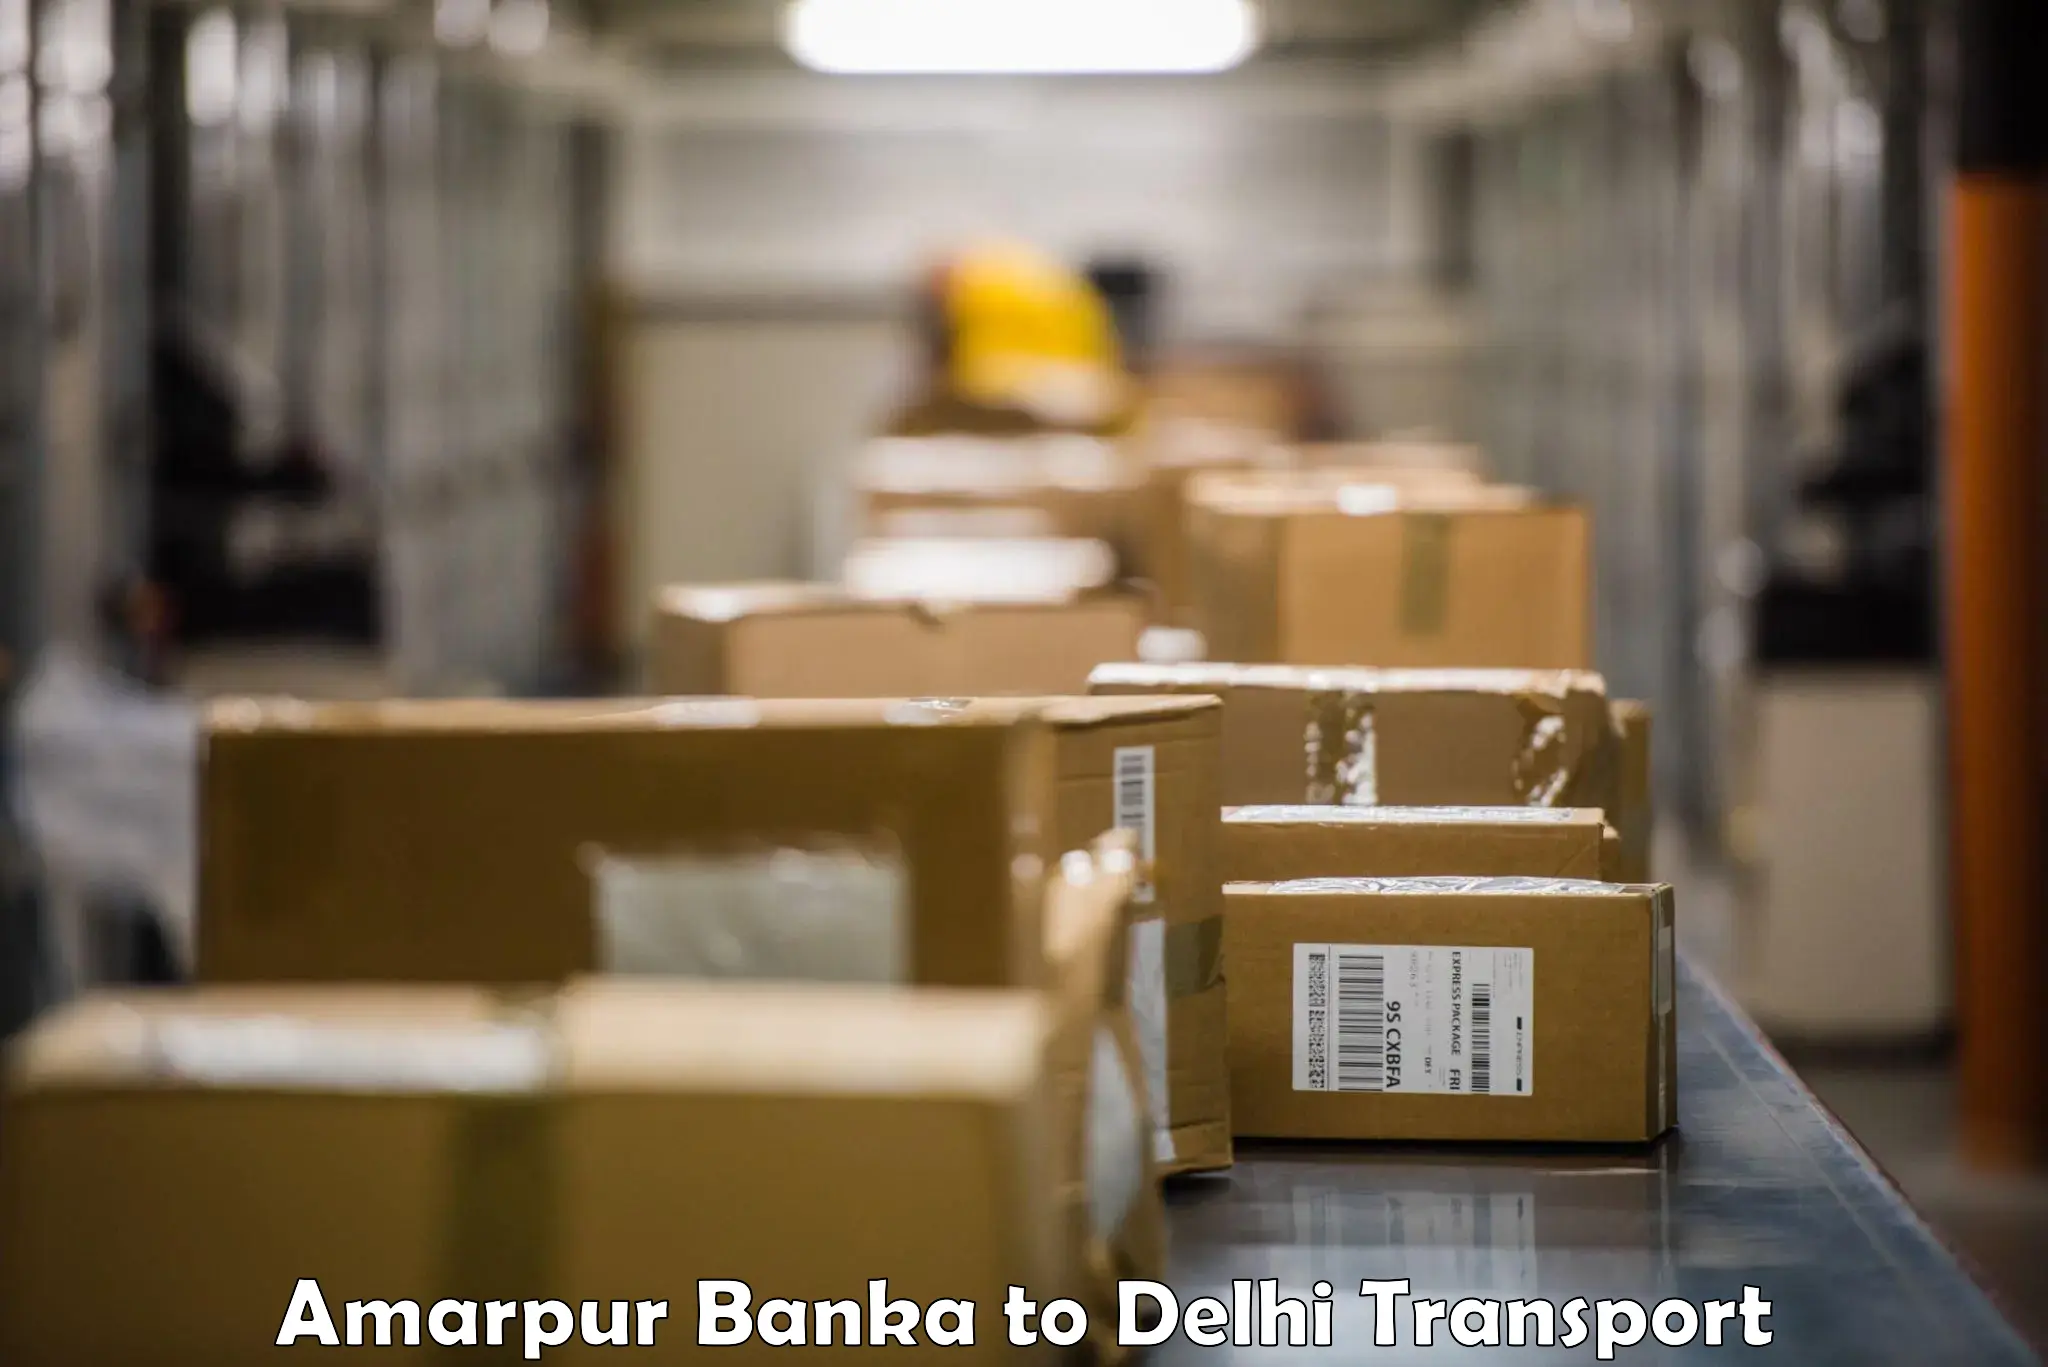 Parcel transport services Amarpur Banka to Delhi